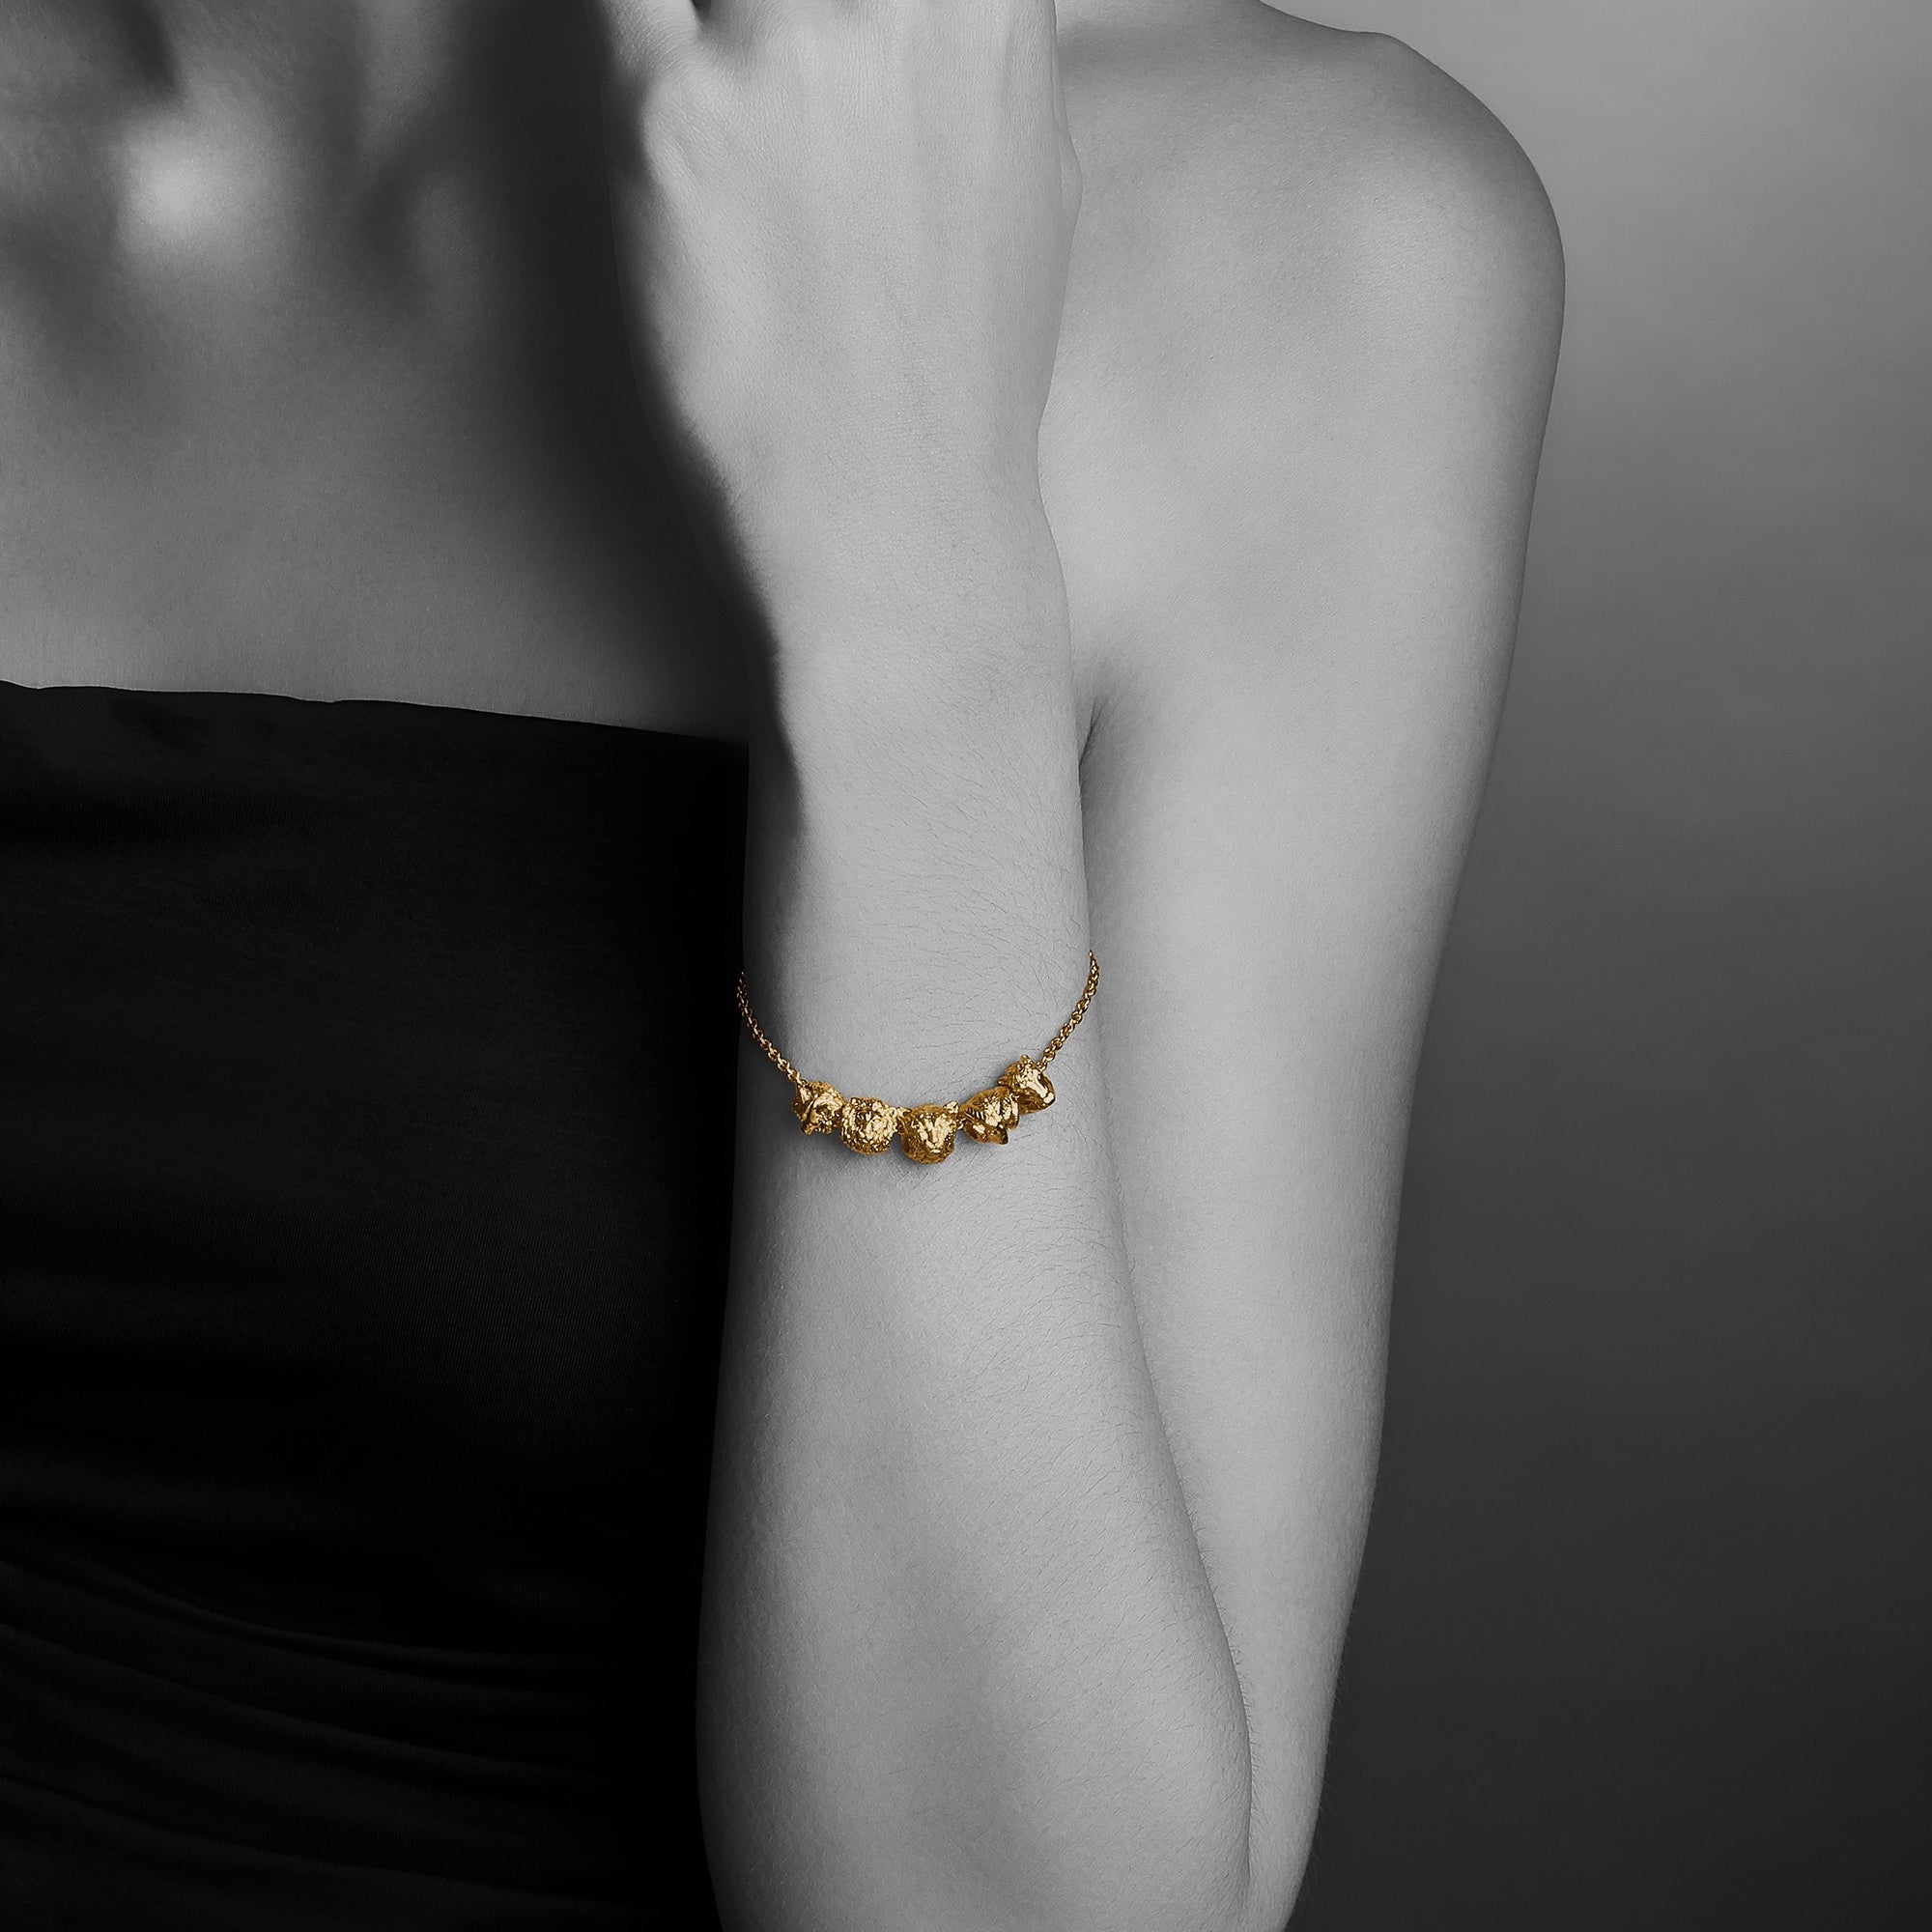 Lion Charm Bracelet – Who's Lookin' Design